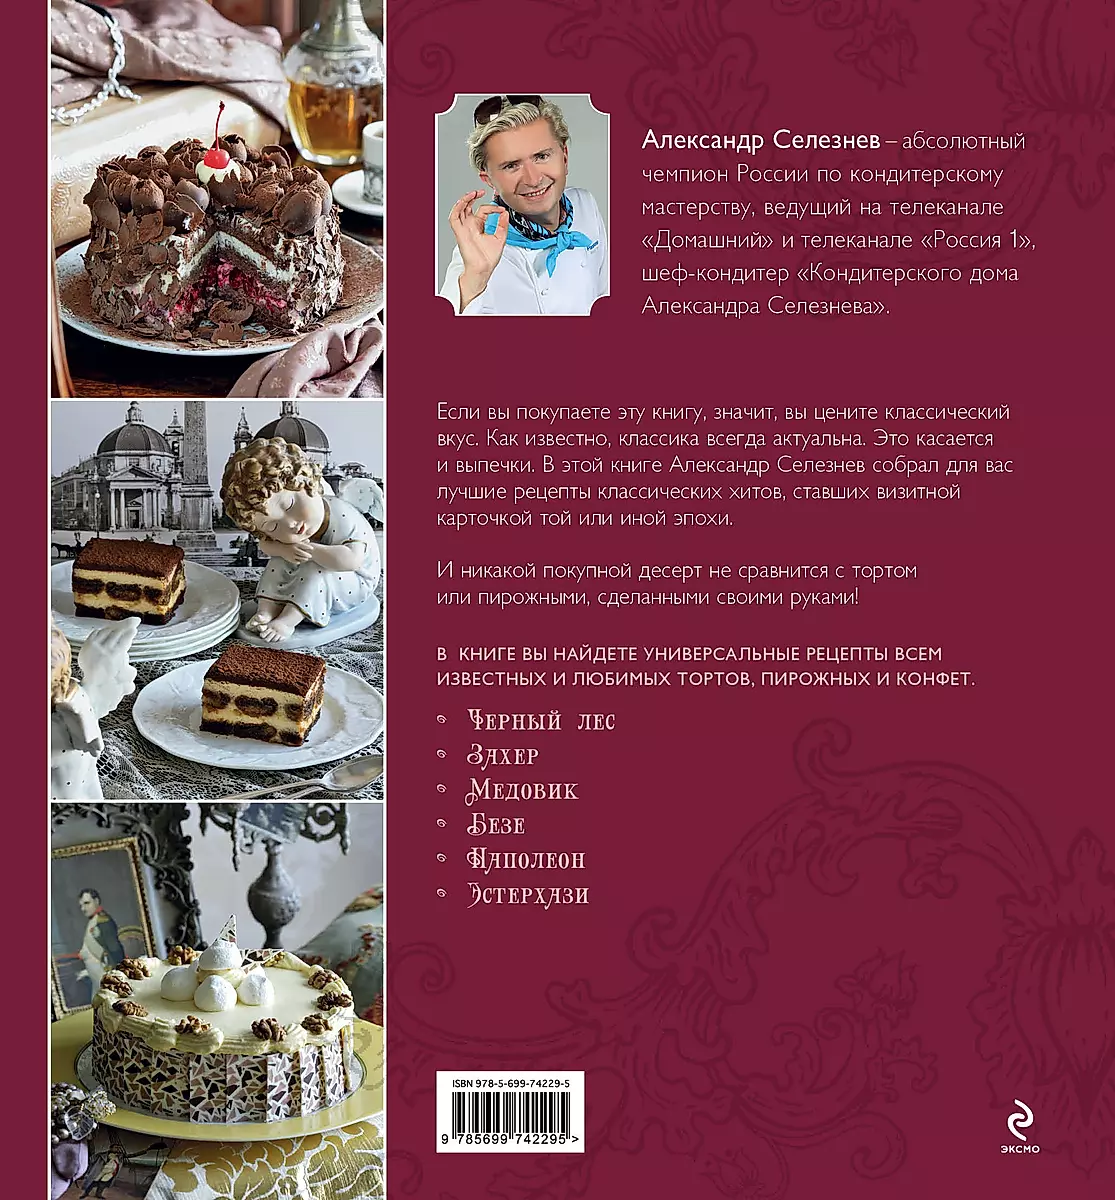 Изысканные торты от Александра Селезнева: лучшие рецепты для настоящих гурманов